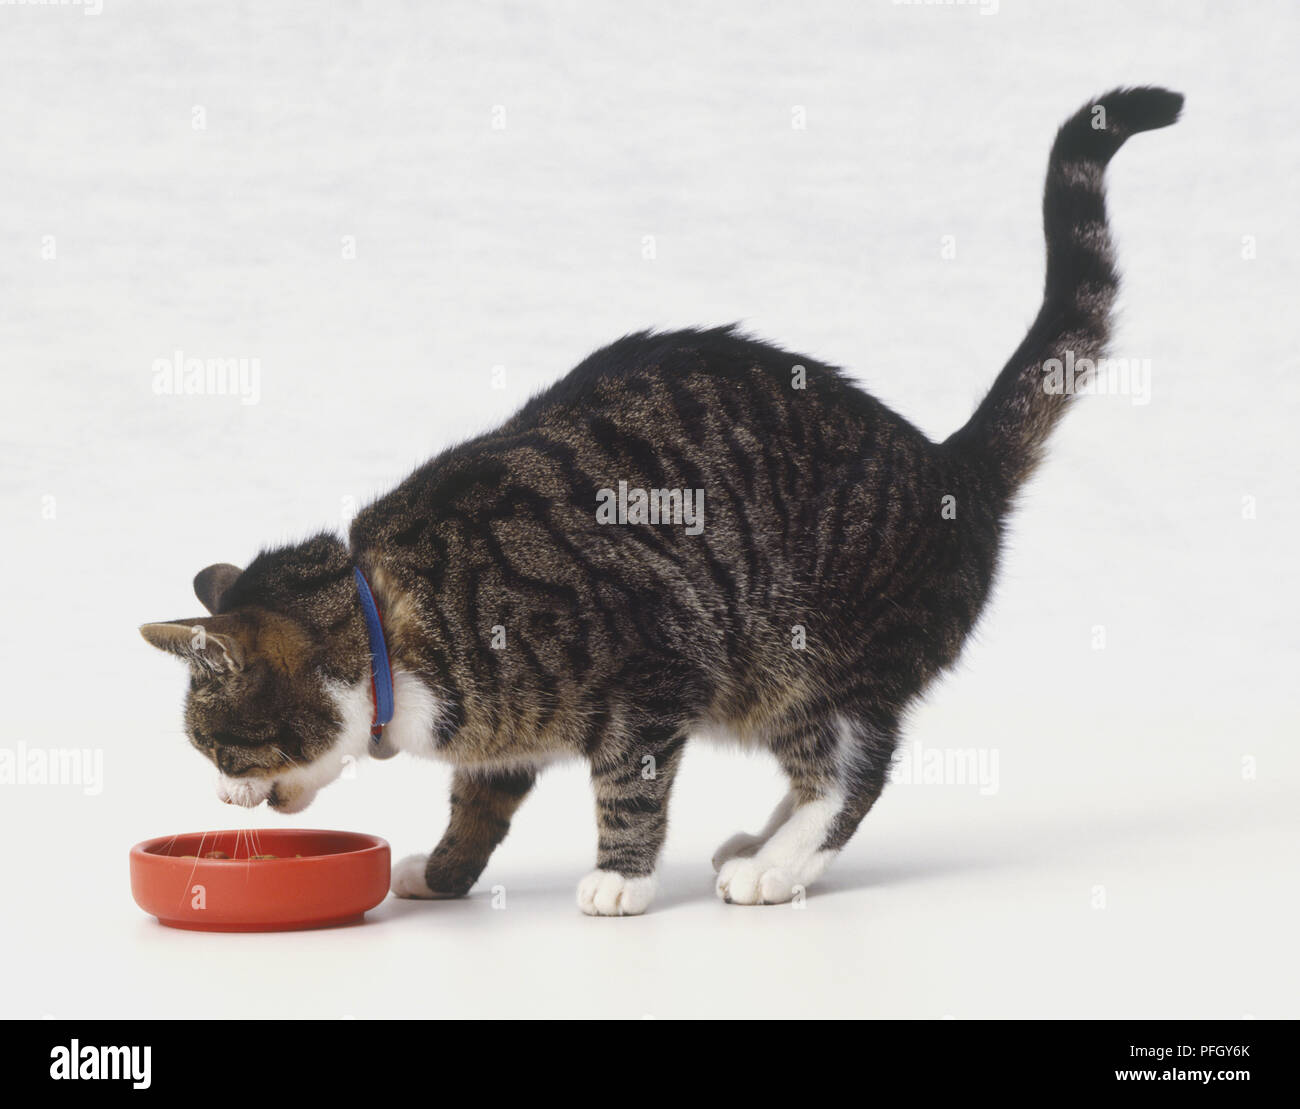 Grau Tabby kurzhaar Katze (Felis catus) mit weißen Hals und Pfoten Beschickung von Red cat Bowl, Seitenansicht Stockfoto